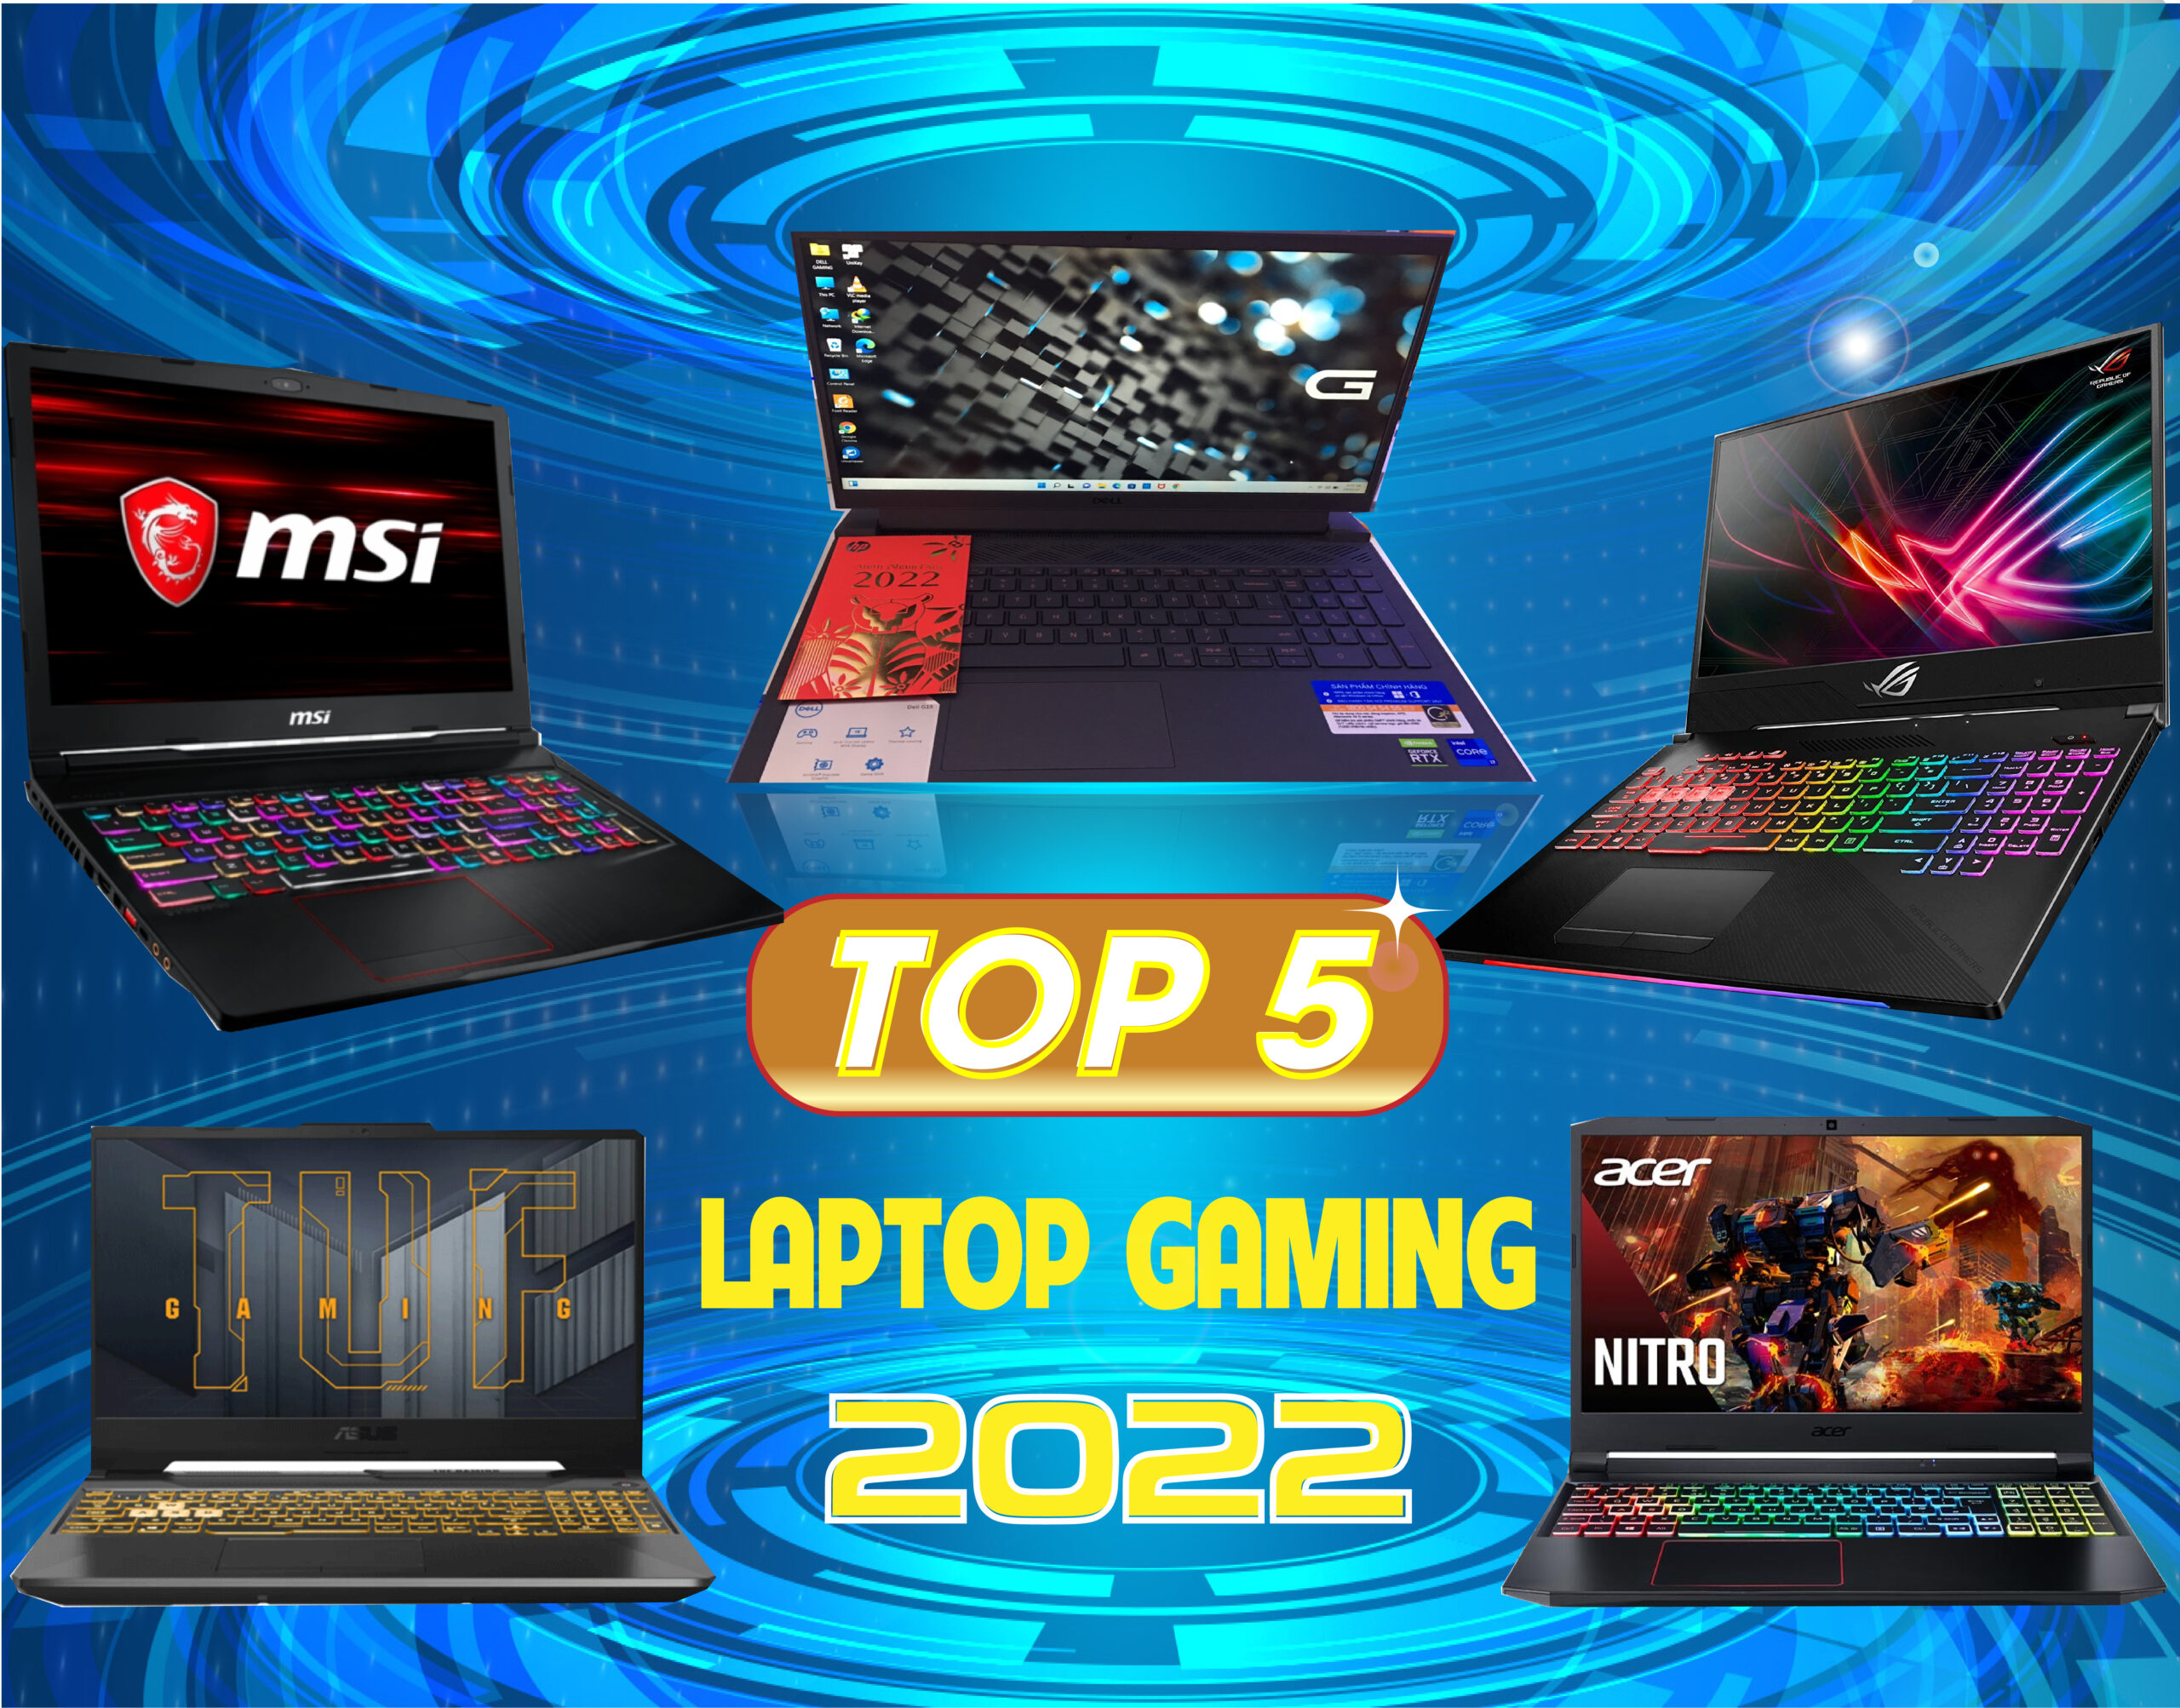 Top 5 Laptop Gaming 2022